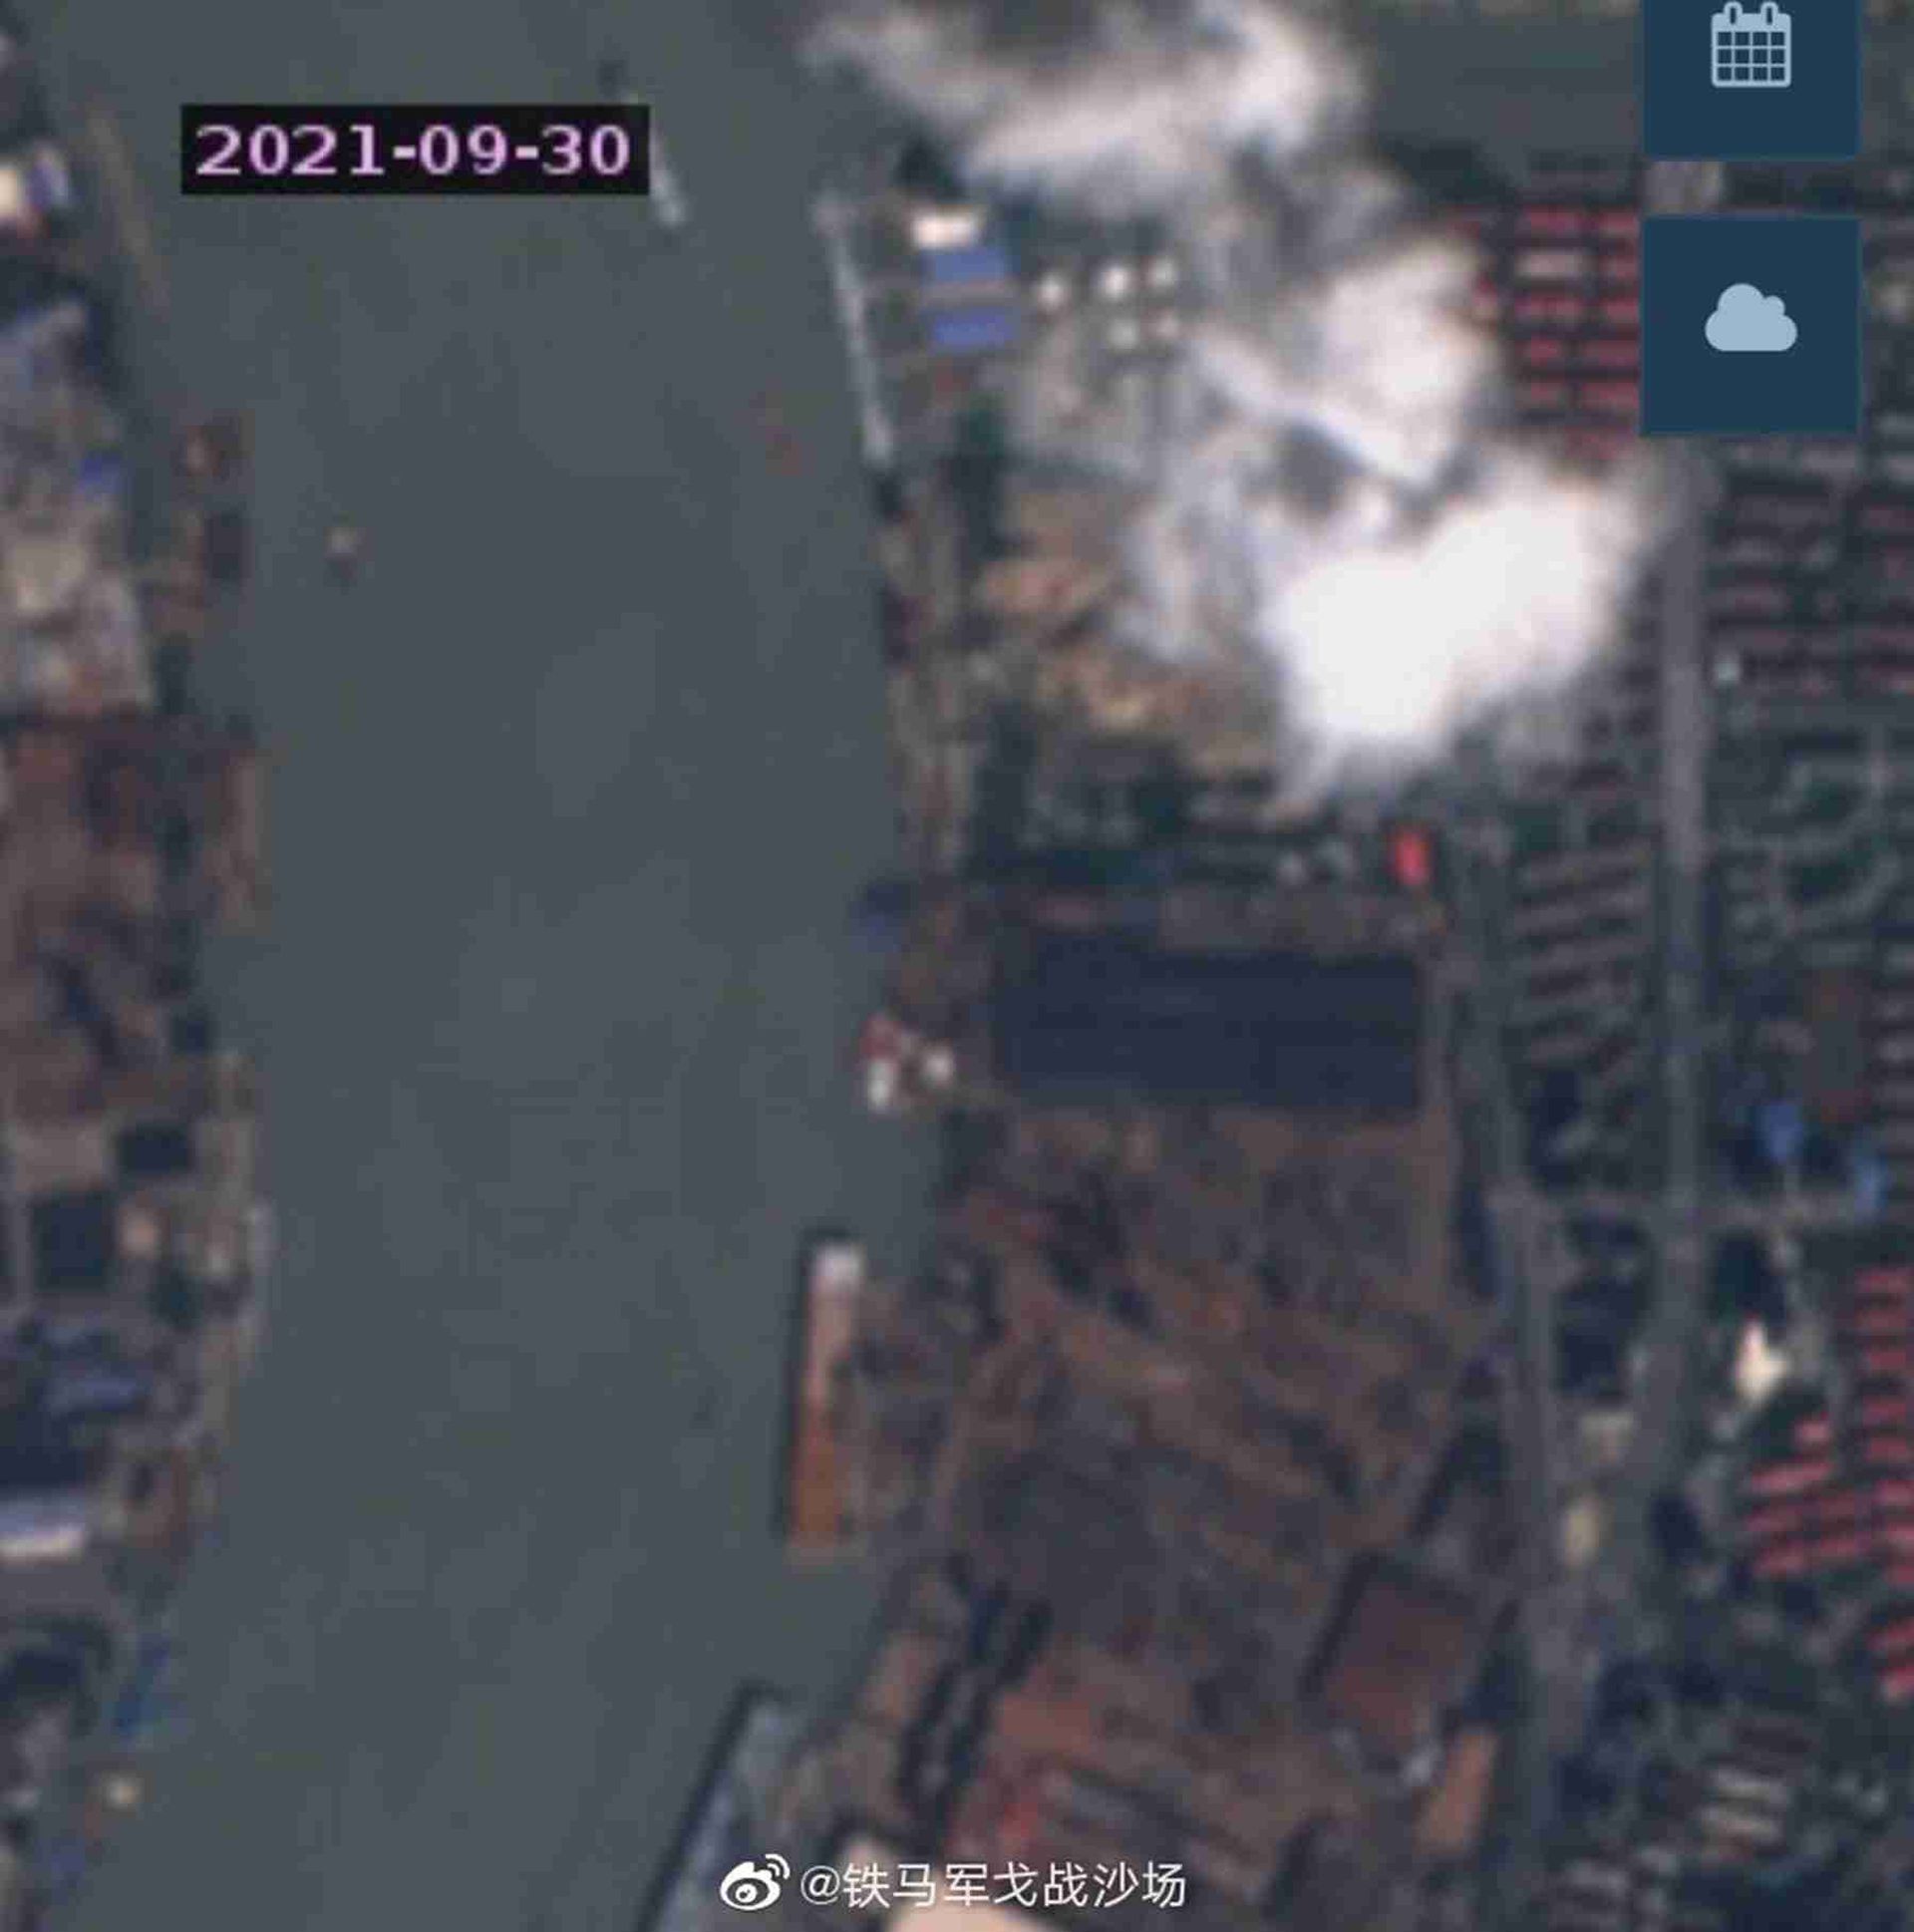 075三号舰最新卫星照。这是拍摄于9月30日的卫星照。（微博@铁马军戈战沙场）